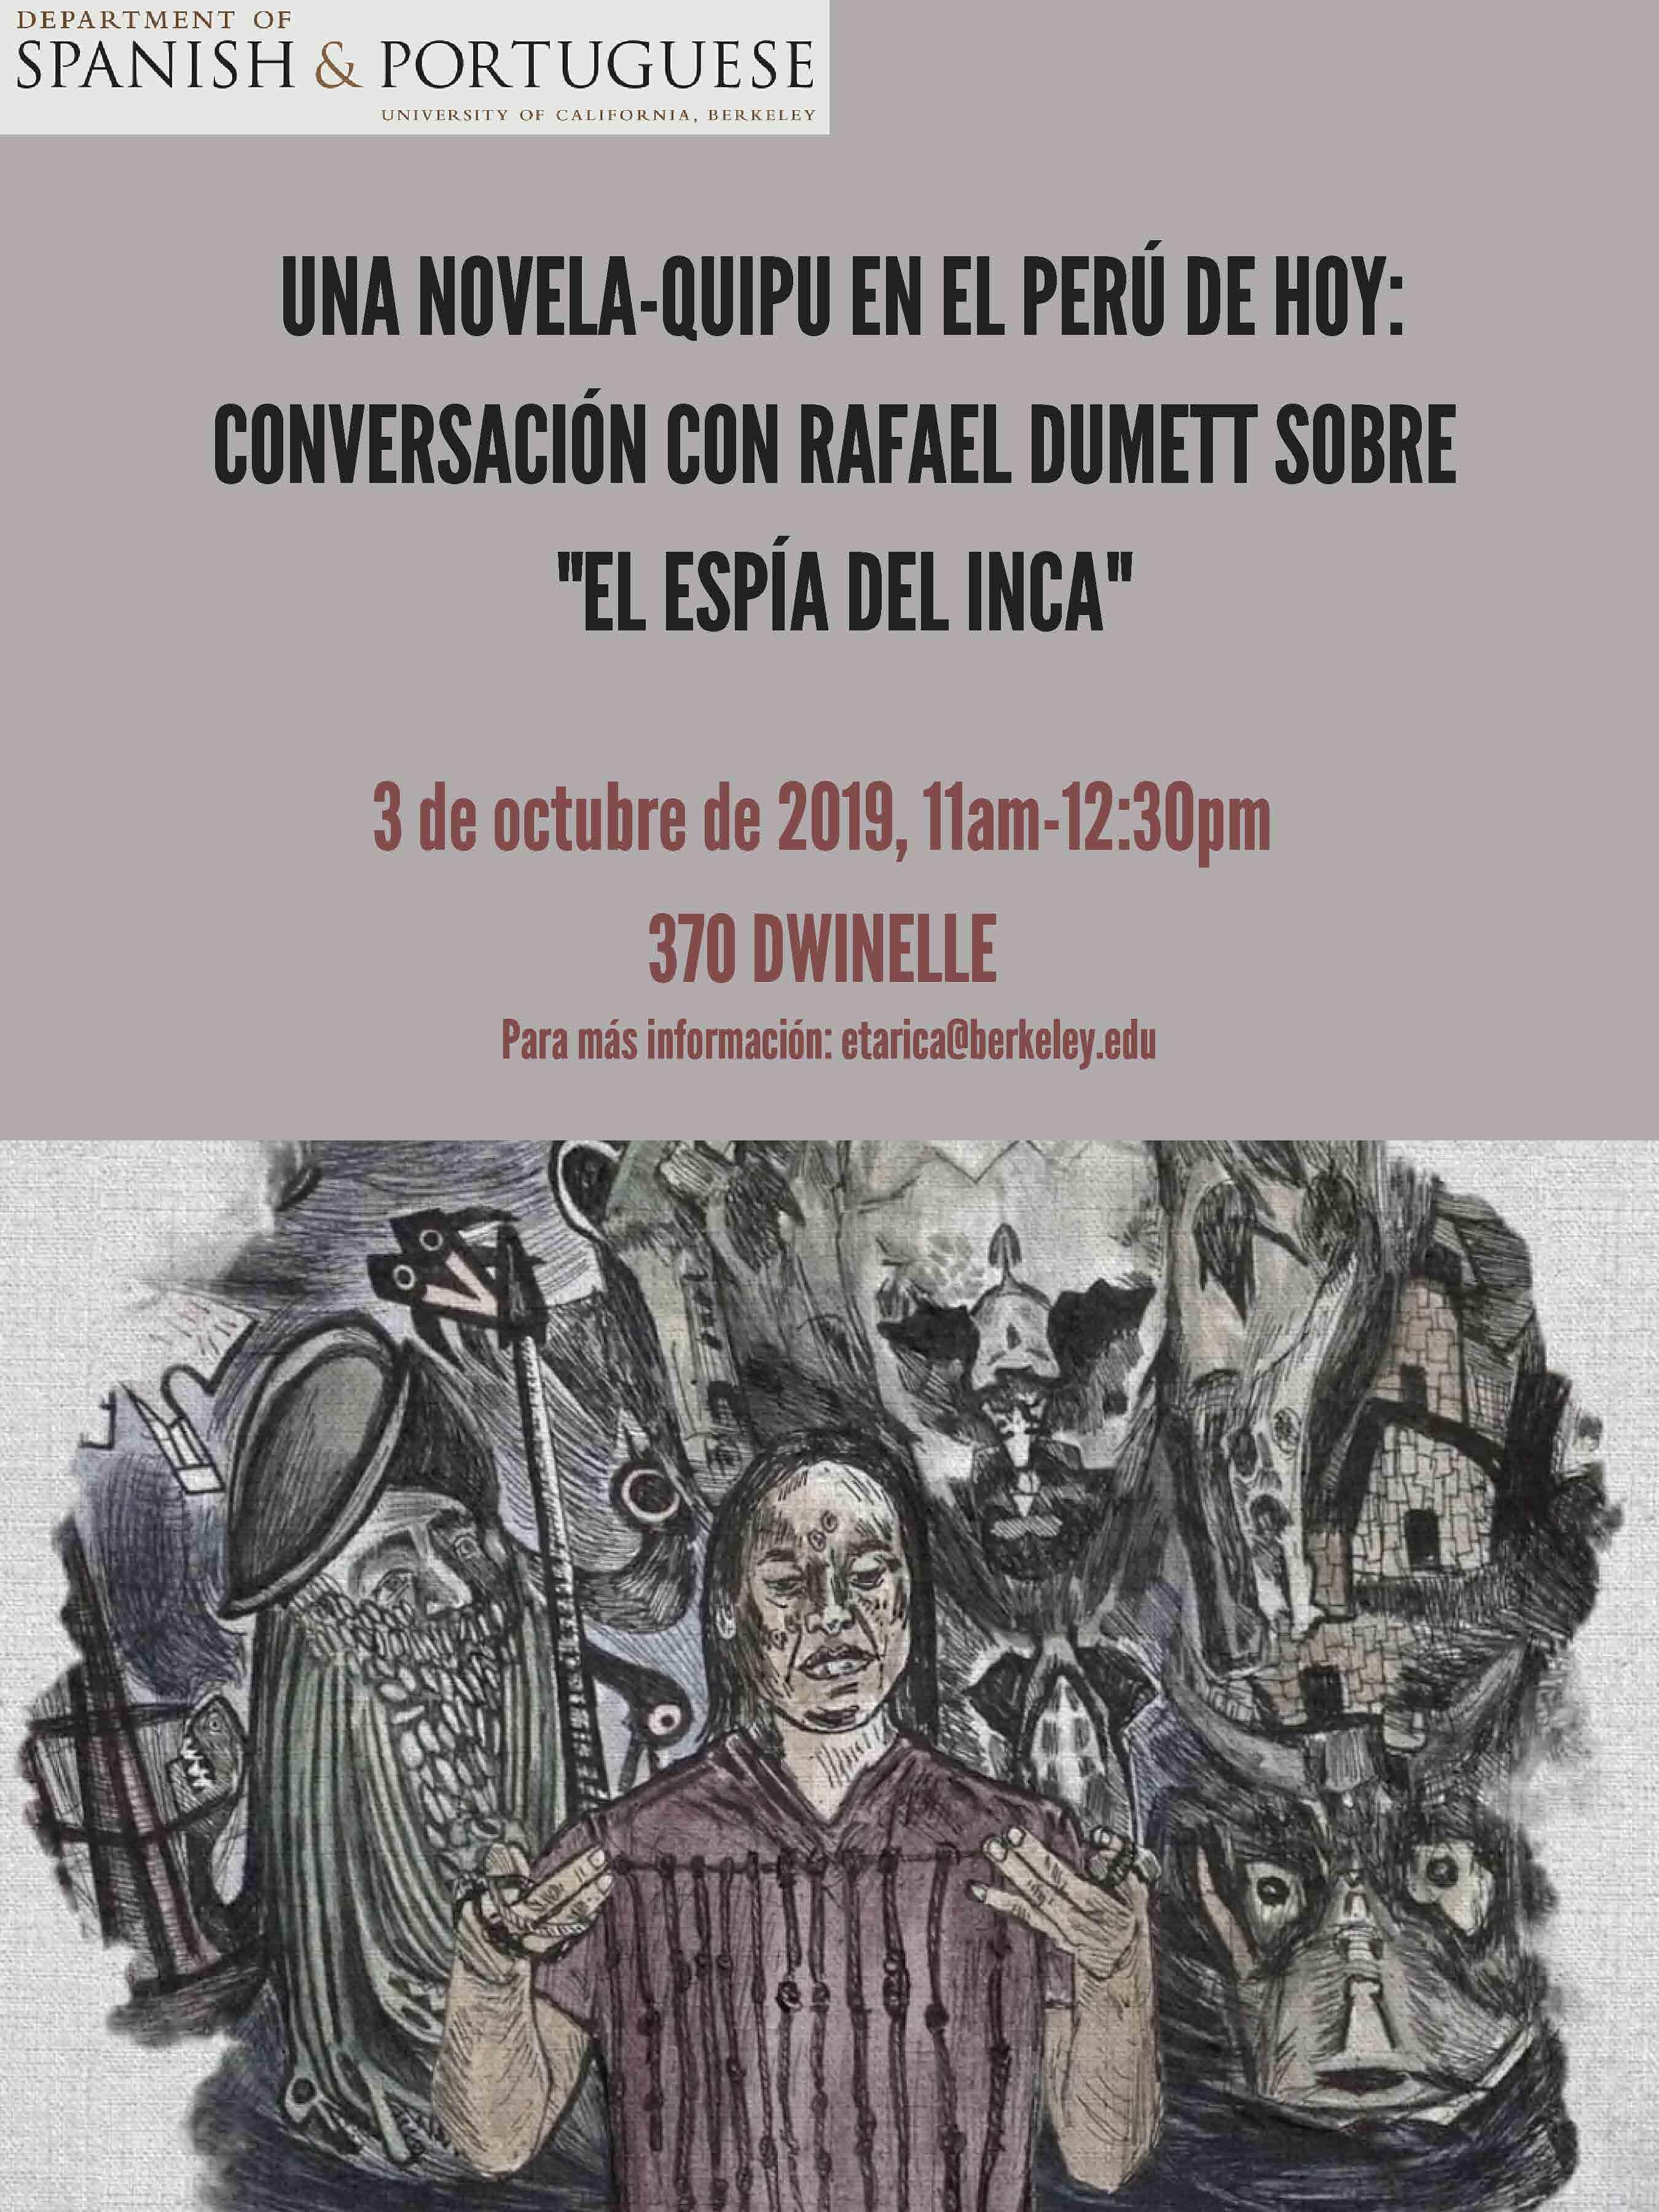  Conversación con Rafael Dumett sobre "El espía del inca"